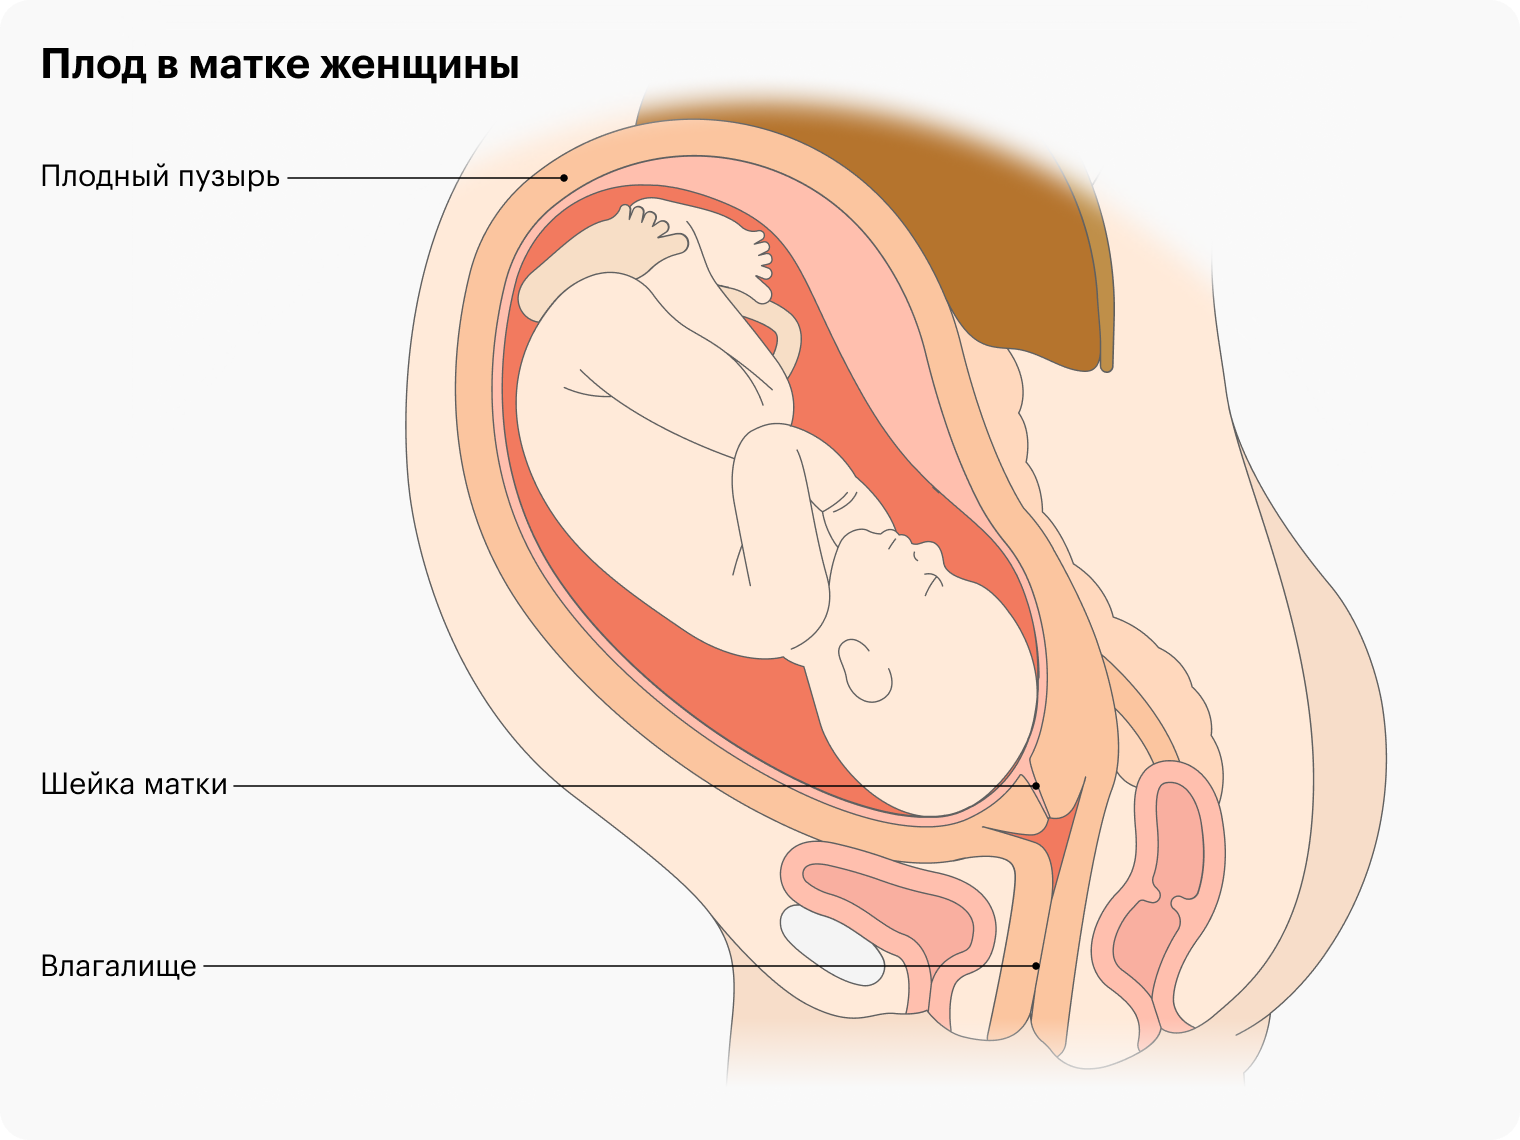 Секс при беременности: безопасные позы, причины для воздержания и польза для будущей мамы